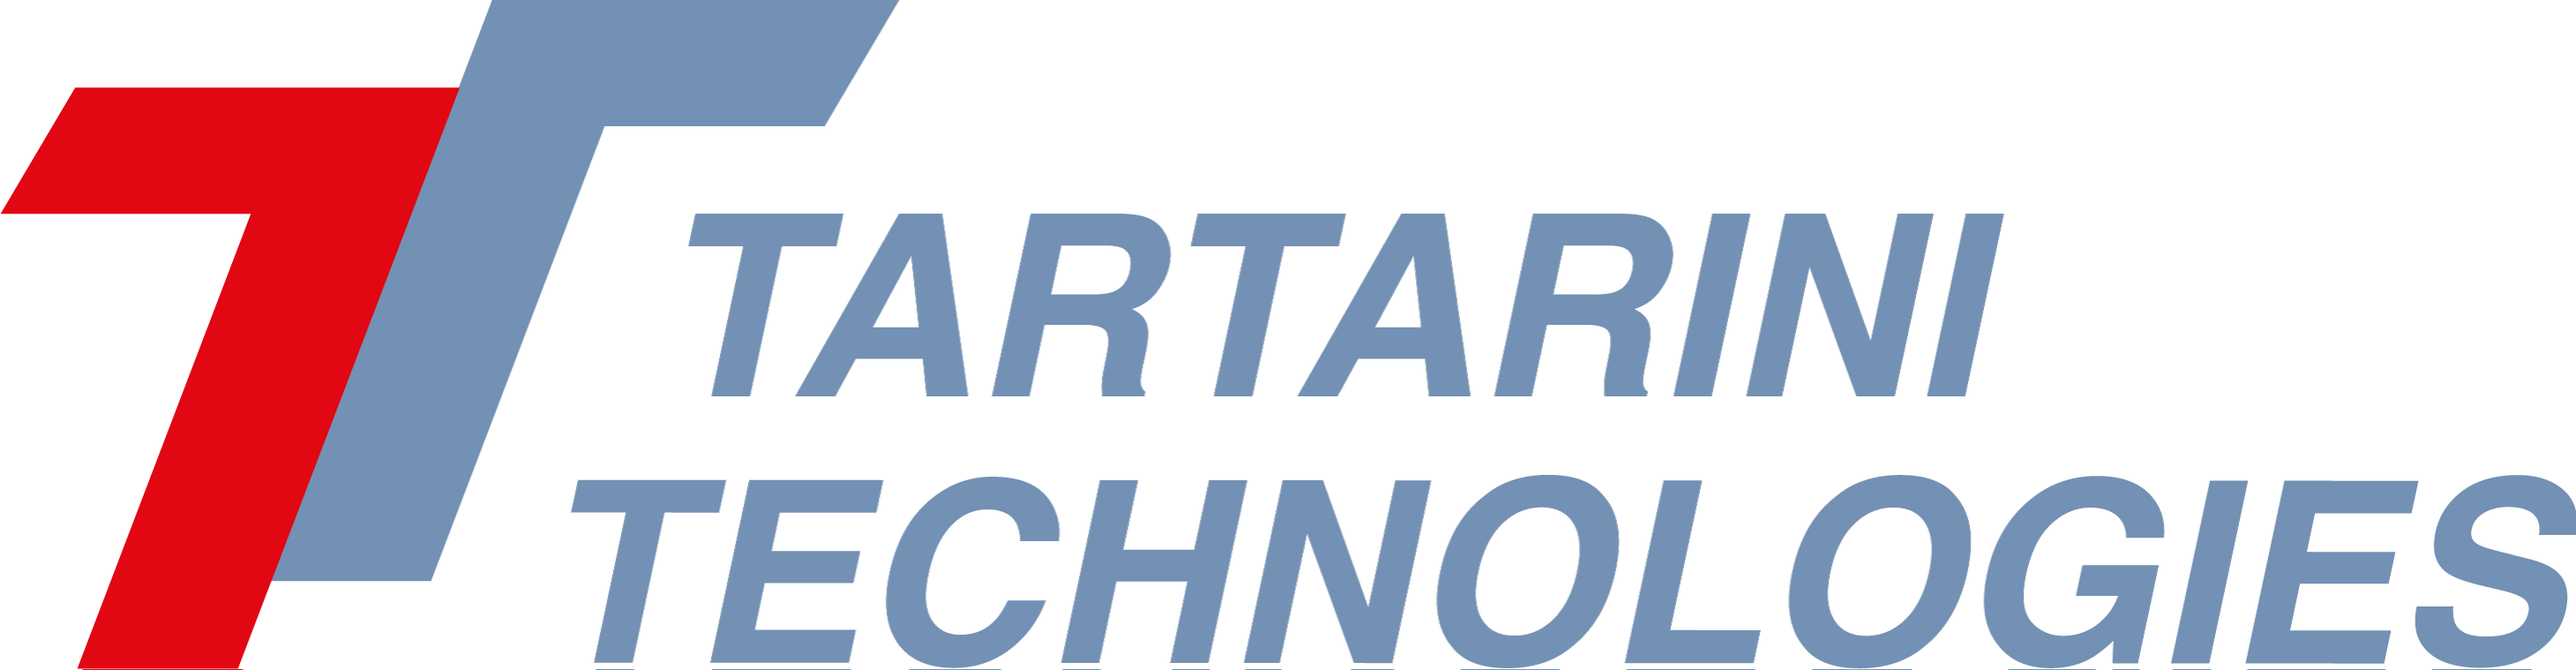 Tartarini Technologies